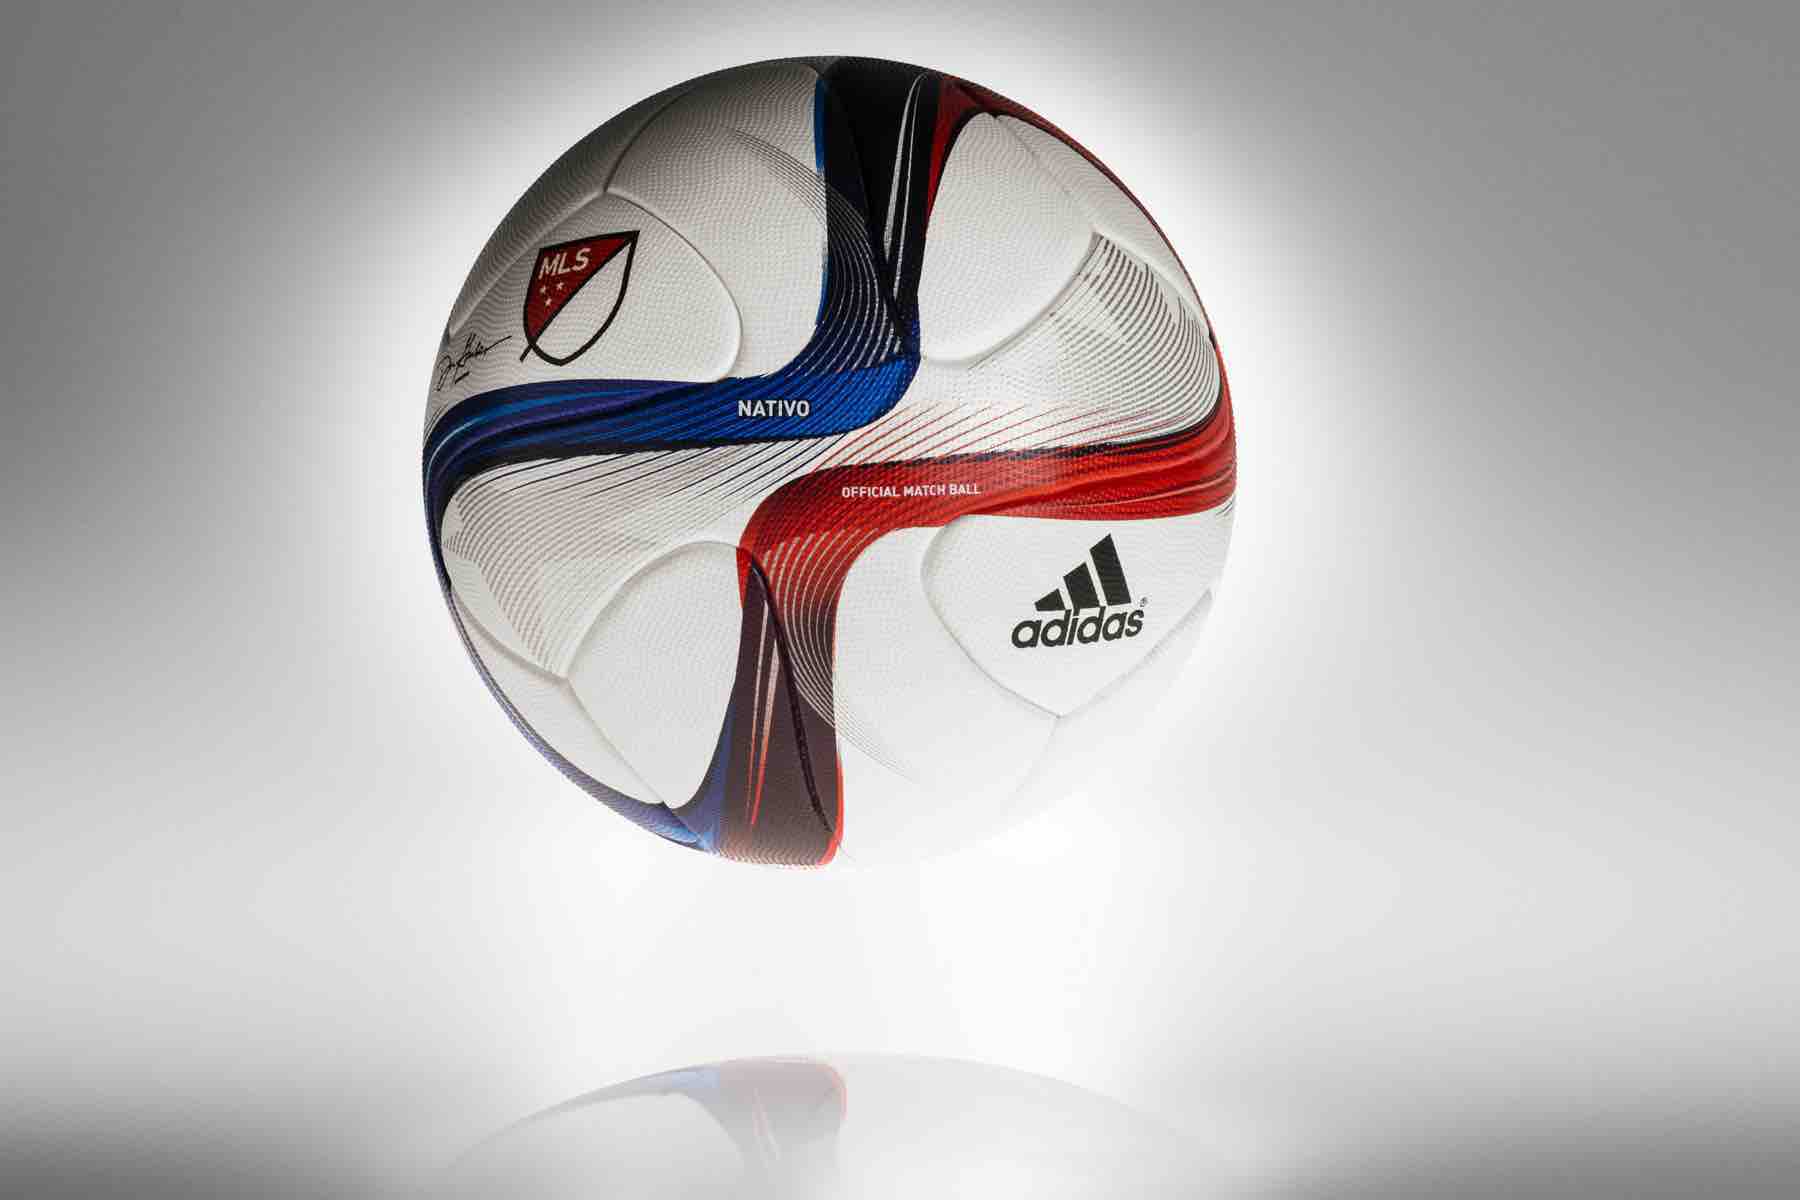 Nativo es el nuevo balón oficial de la MLS